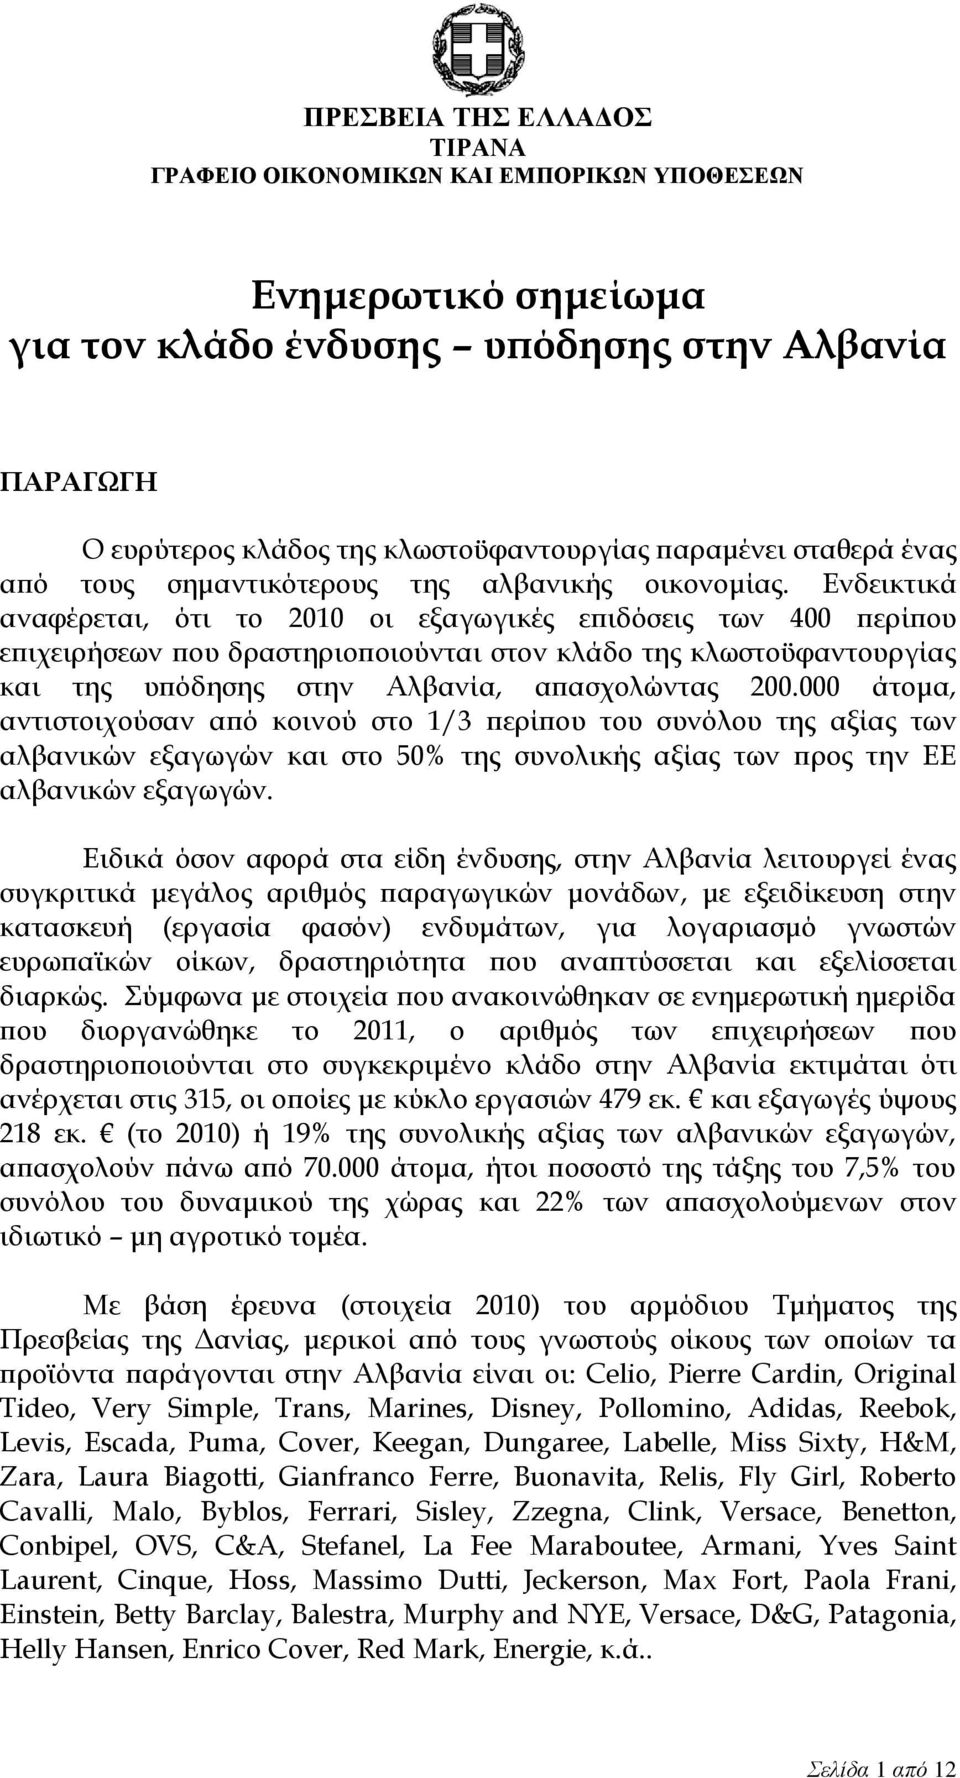 Ενδεικτικά αναφέρεται, ότι το 2010 οι εξαγωγικές επιδόσεις των 400 περίπου επιχειρήσεων που δραστηριοποιούνται στον κλάδο της κλωστοϋφαντουργίας και της υπόδησης στην Αλβανία, απασχολώντας 200.